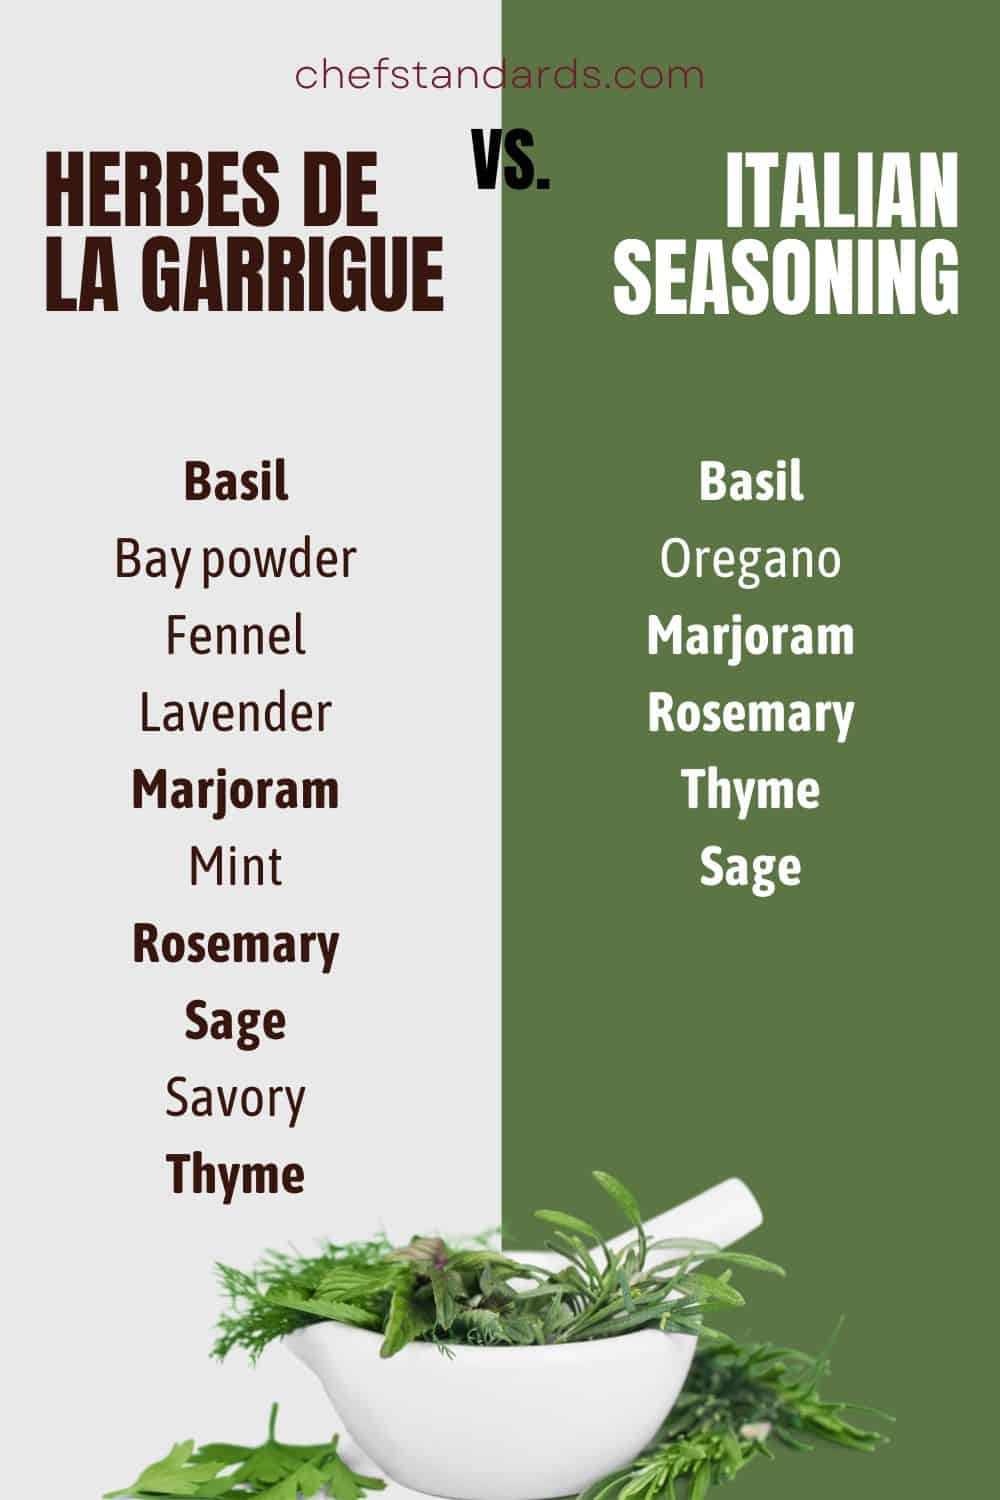 HERBES DE LA GARRIGUe vs. Italian seasoning